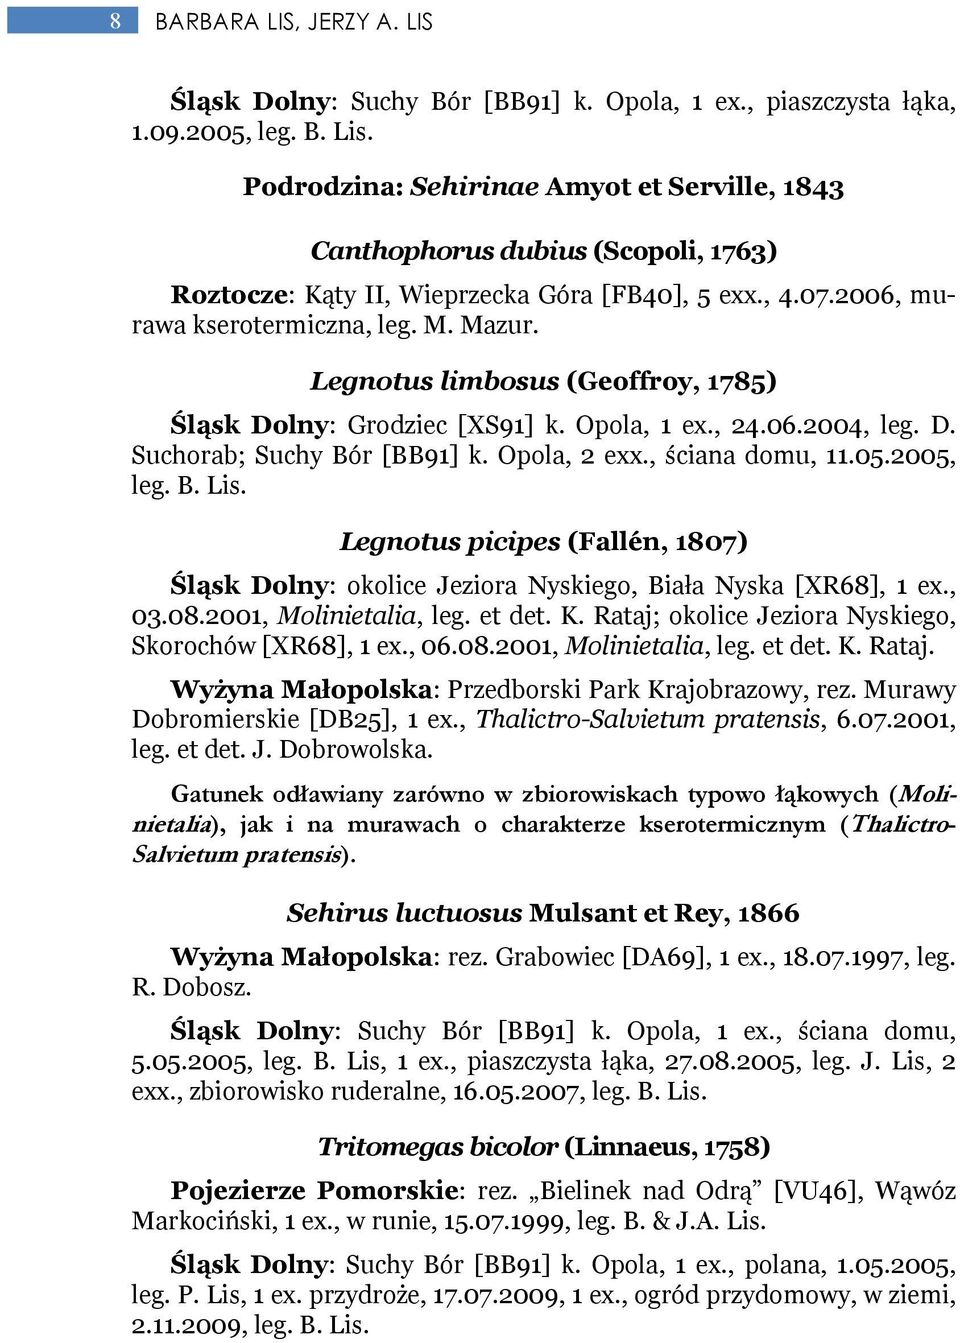 Legnotus limbosus (Geoffroy, 1785) Śląsk Dolny: Grodziec [XS91] k. Opola, 1 ex., 24.06.2004, leg. D. Suchorab; Suchy Bór [BB91] k. Opola, 2 exx., ściana domu, 11.05.2005, leg. B. Lis.